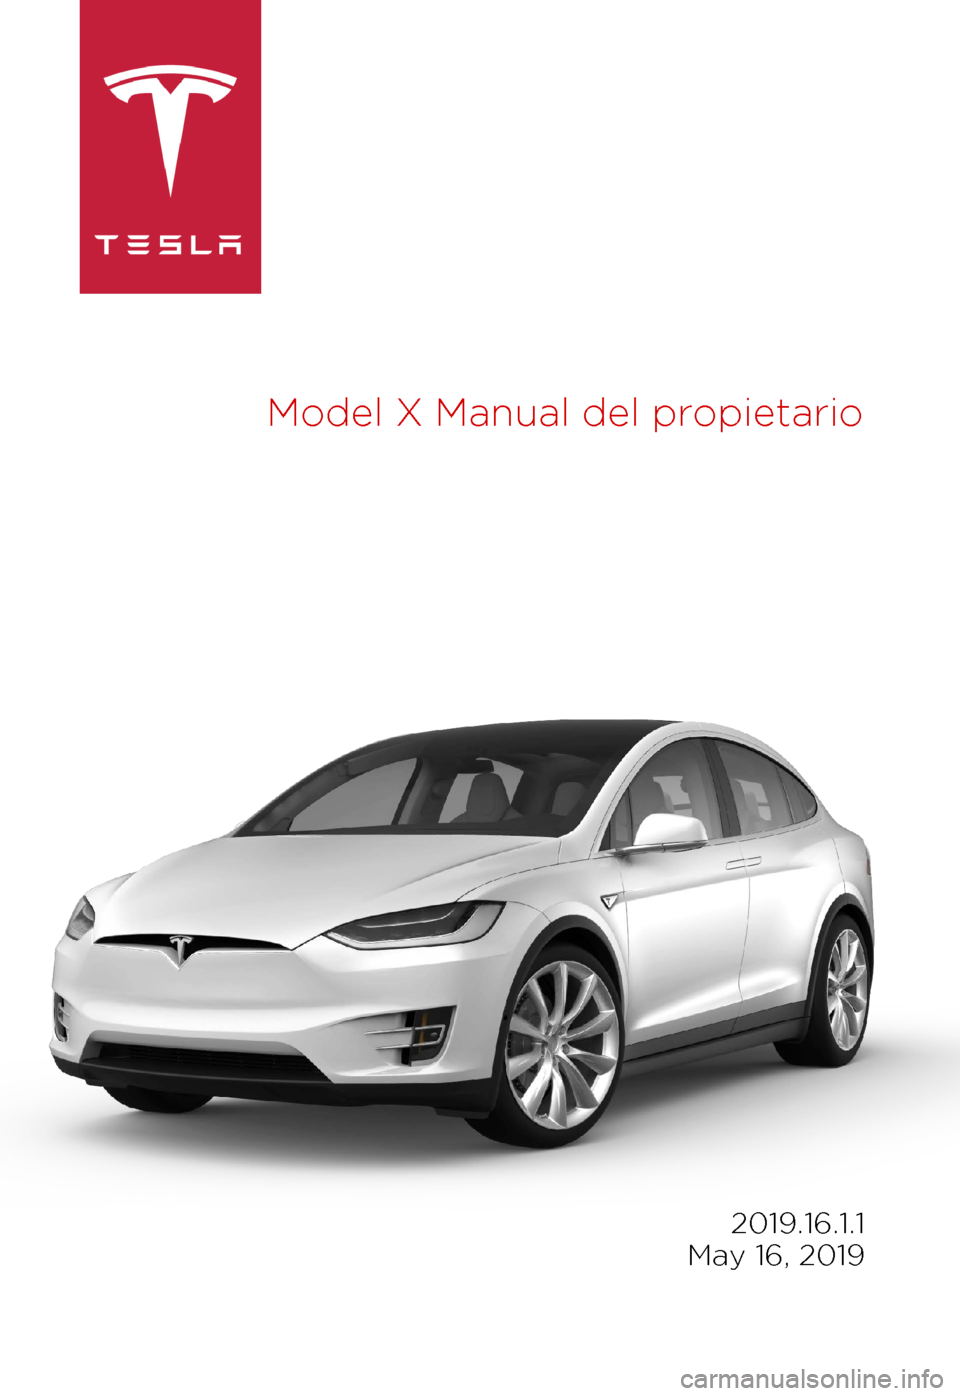 TESLA MODEL X 2019   Manual del propietario (in Spanish) Model 
X Manual del propietario 2019.16.1.1
 
May 16, 2019 